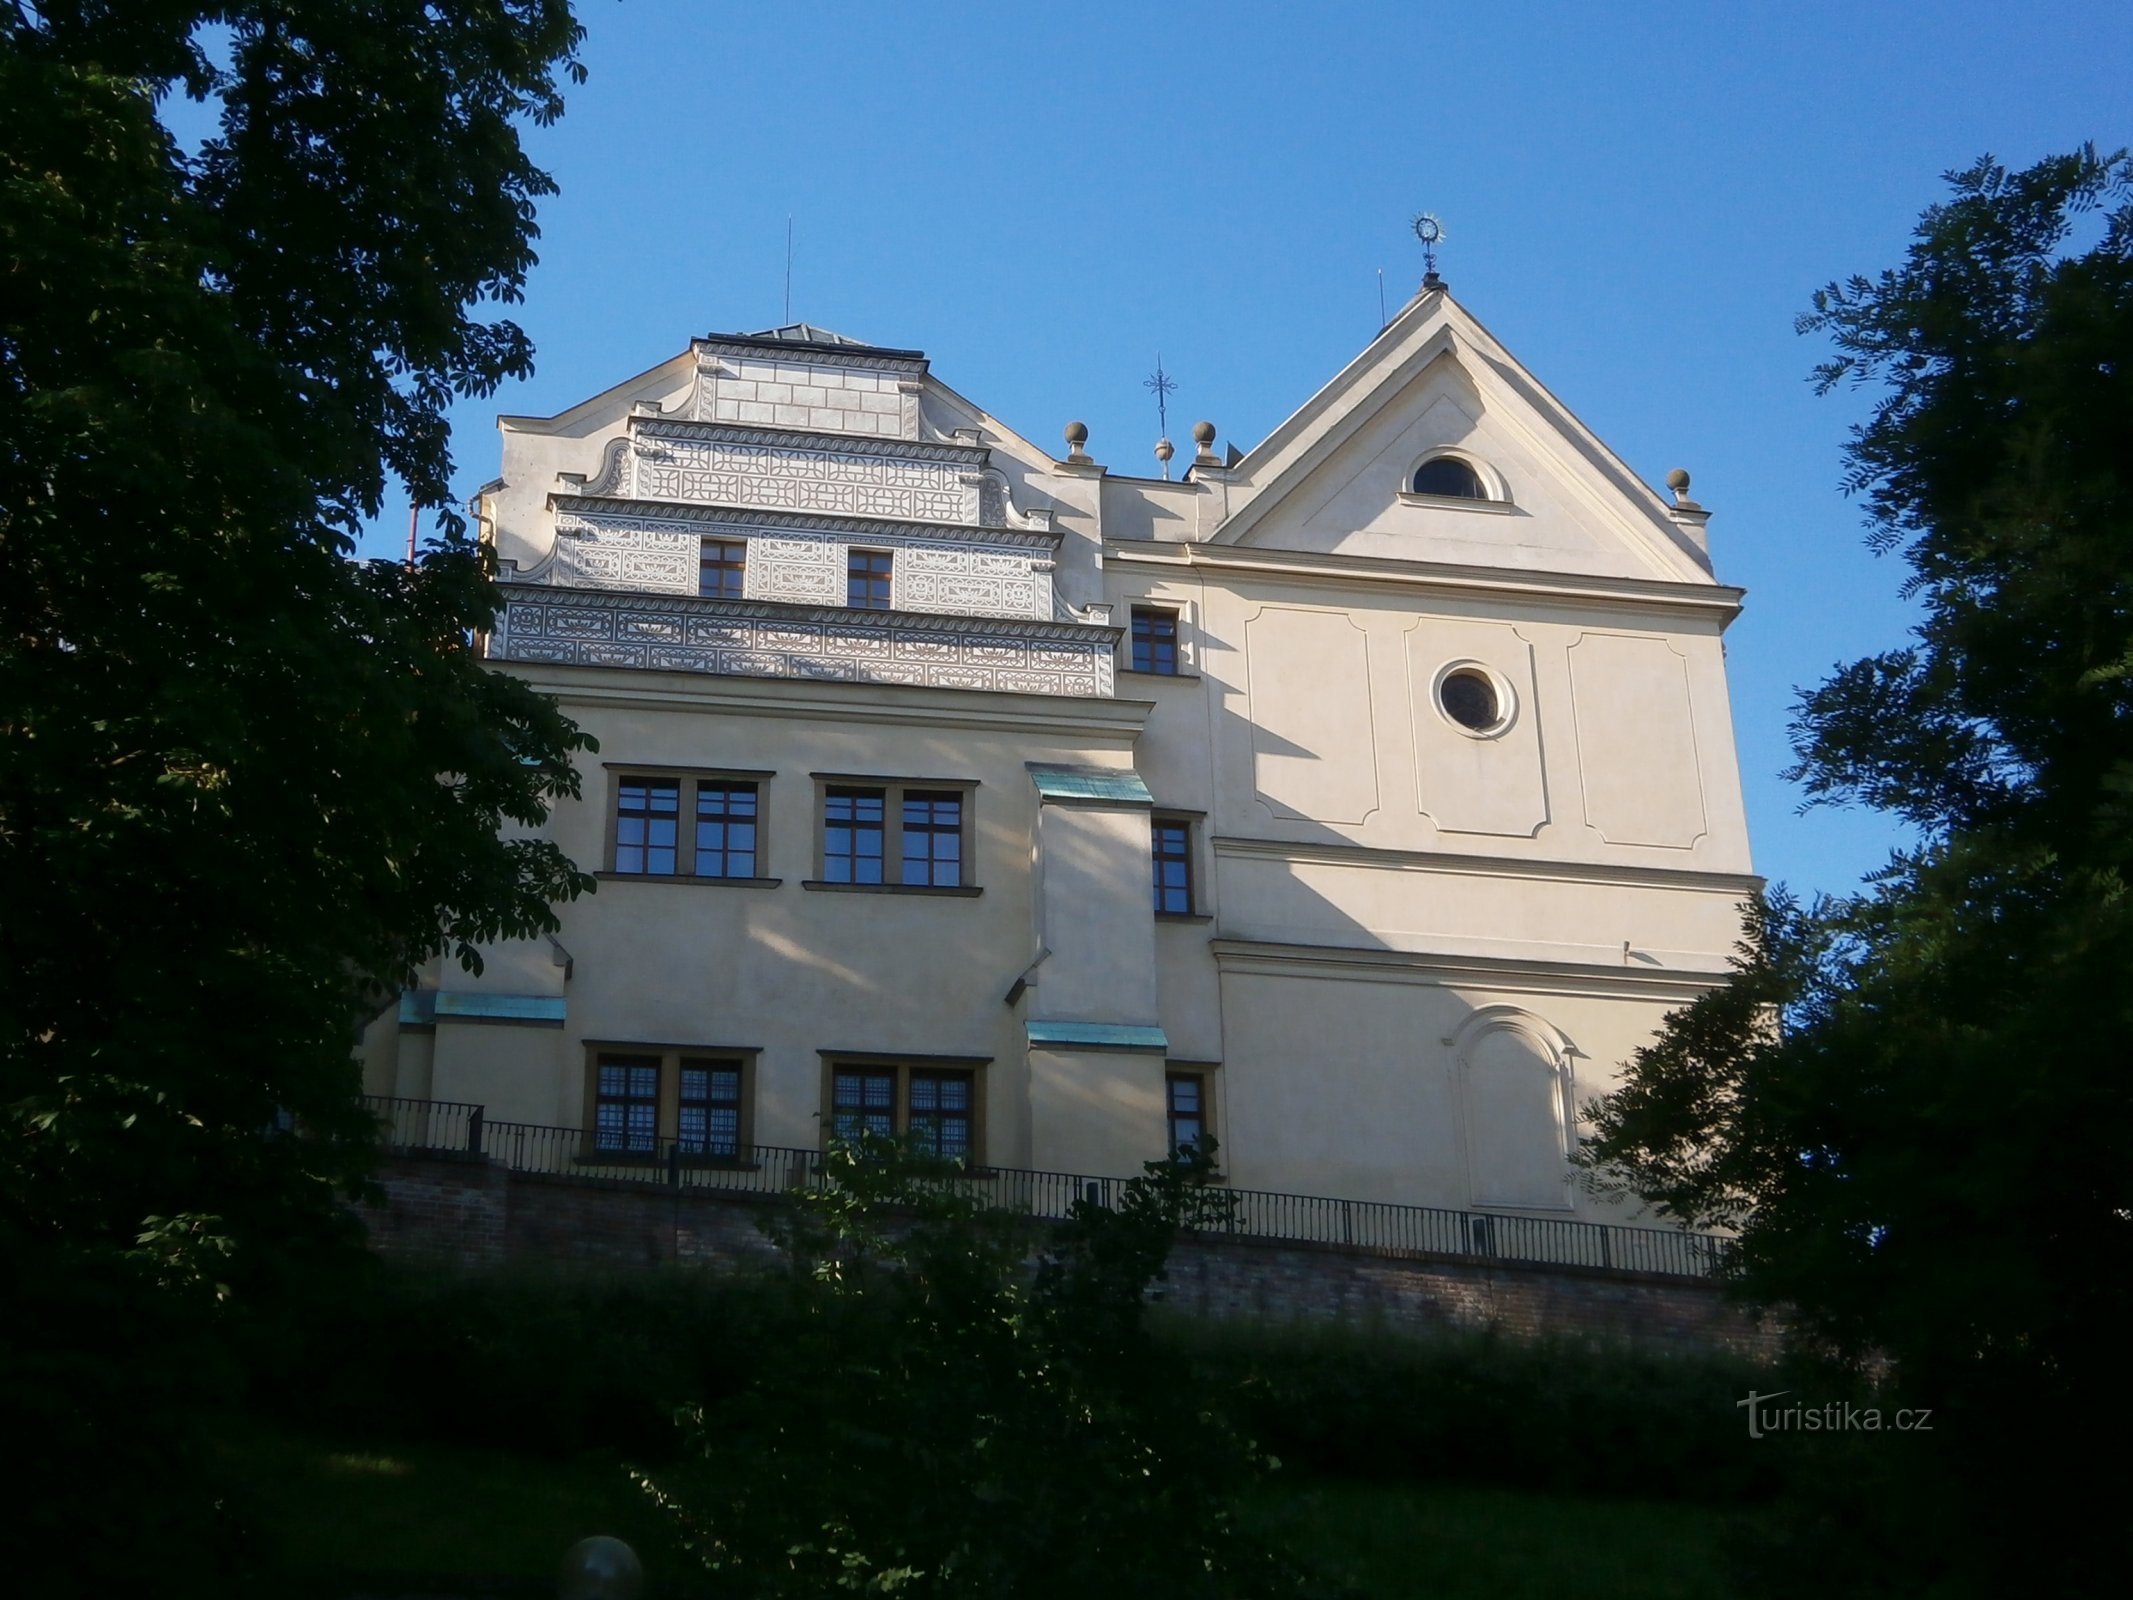 Građevinska kuća s crkvom sv. Ivana Nepomučkog (Hradec Králové, 2.7.2016. srpnja XNUMX.)